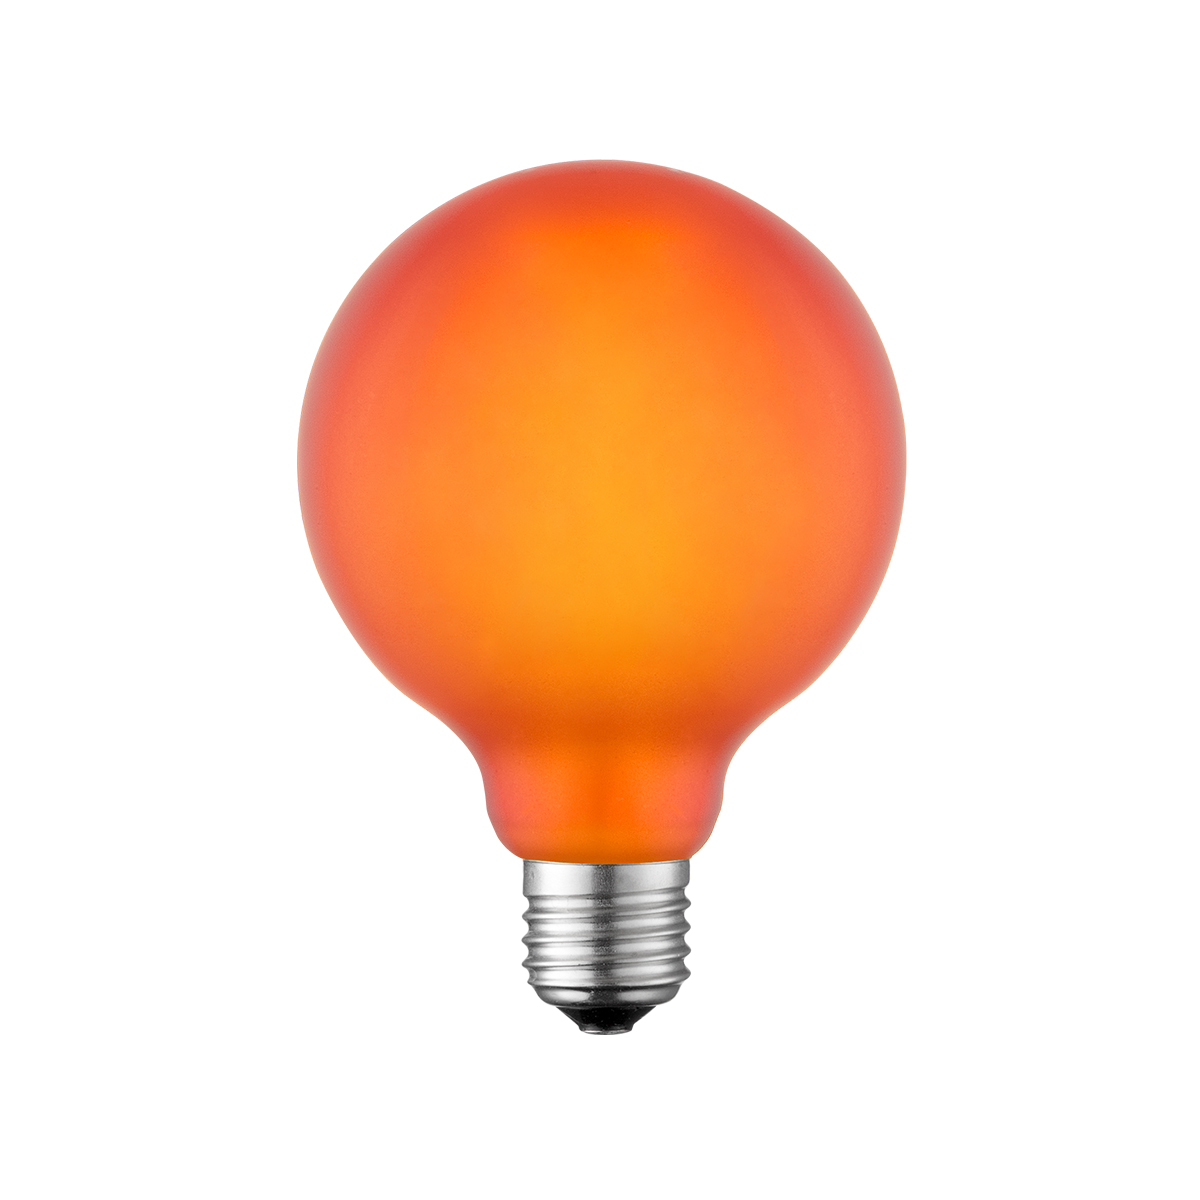 Tangla lighting - TLB-9005-04OG - LED Light Bulb Single Spiral filament - G125 4W orange opal - non dimmable - E27